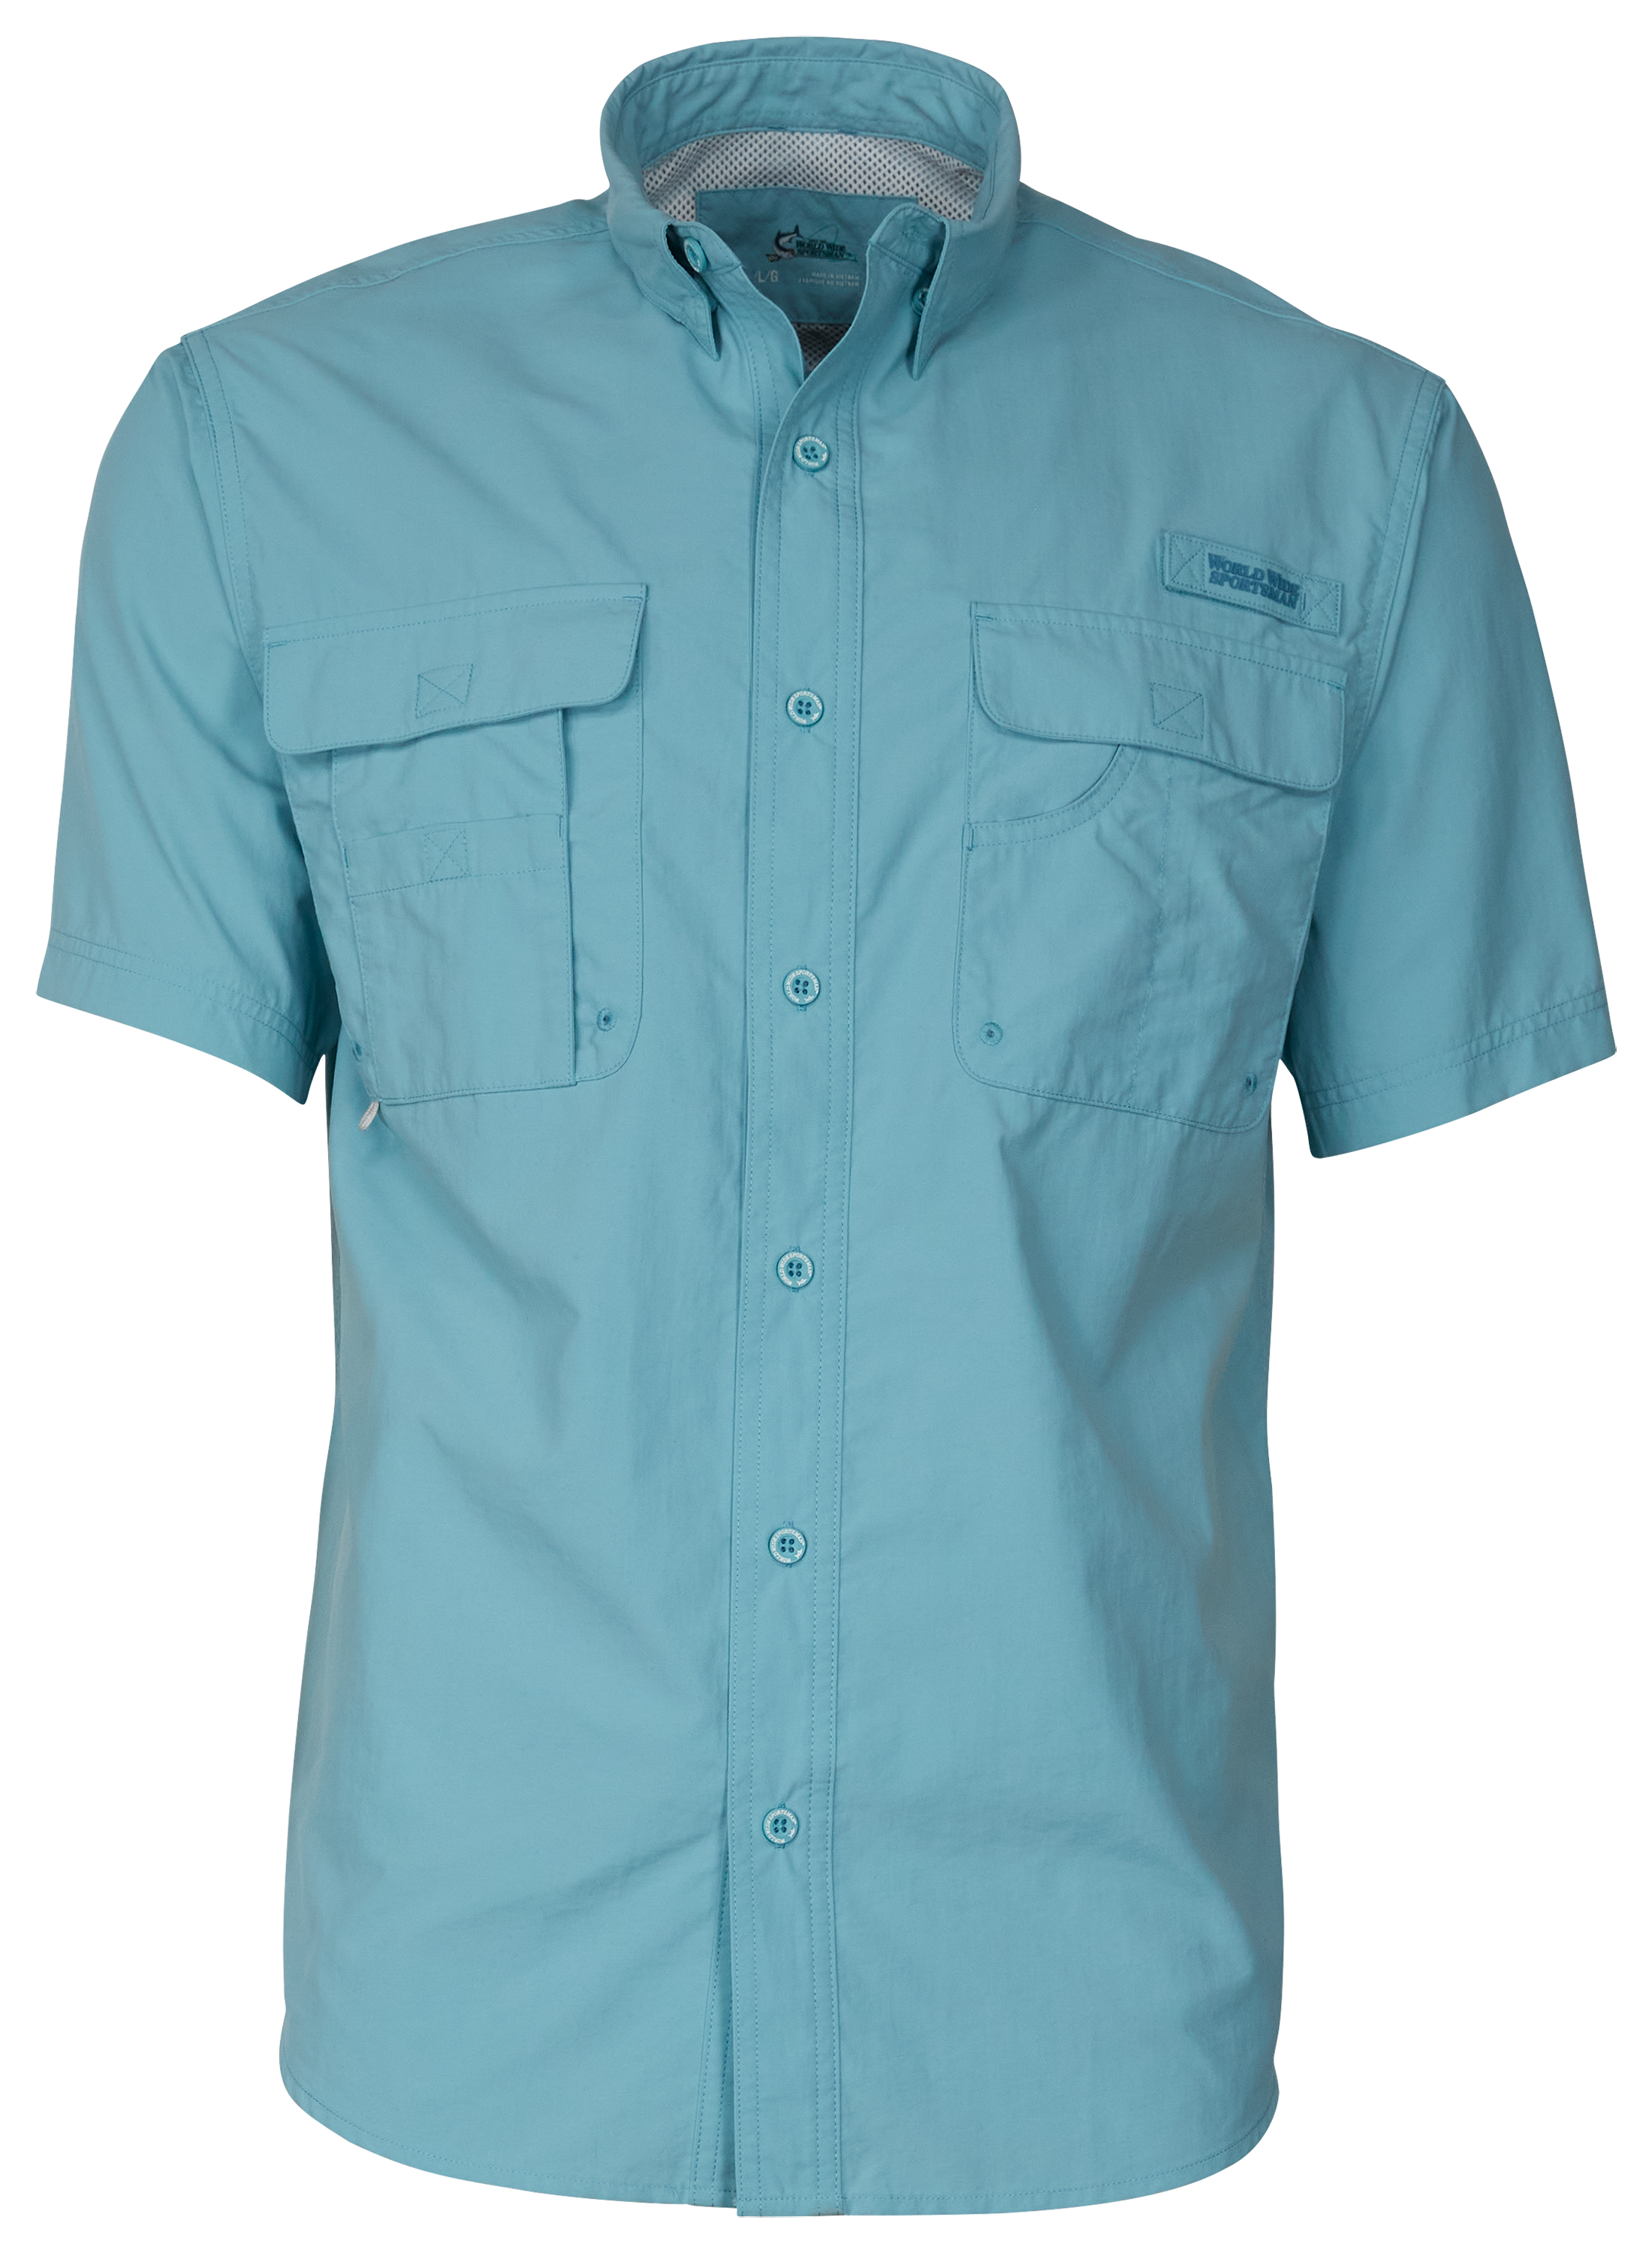 Men's Adidas Fishing Shirt Gray XXL Short Sleeve Outdoors Nylon